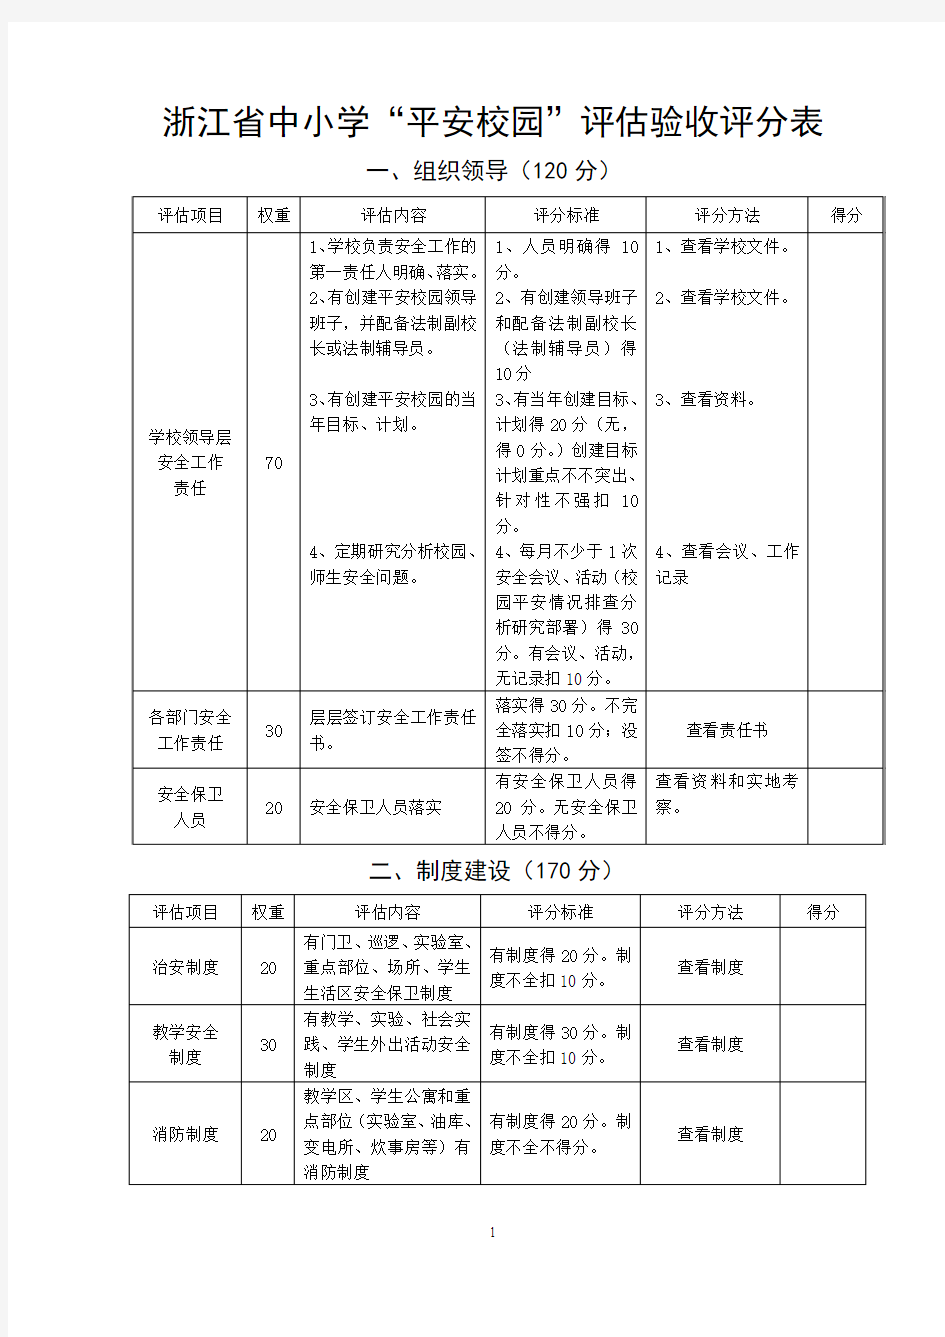 浙江省中小学平安校园评估验收评分表汇总